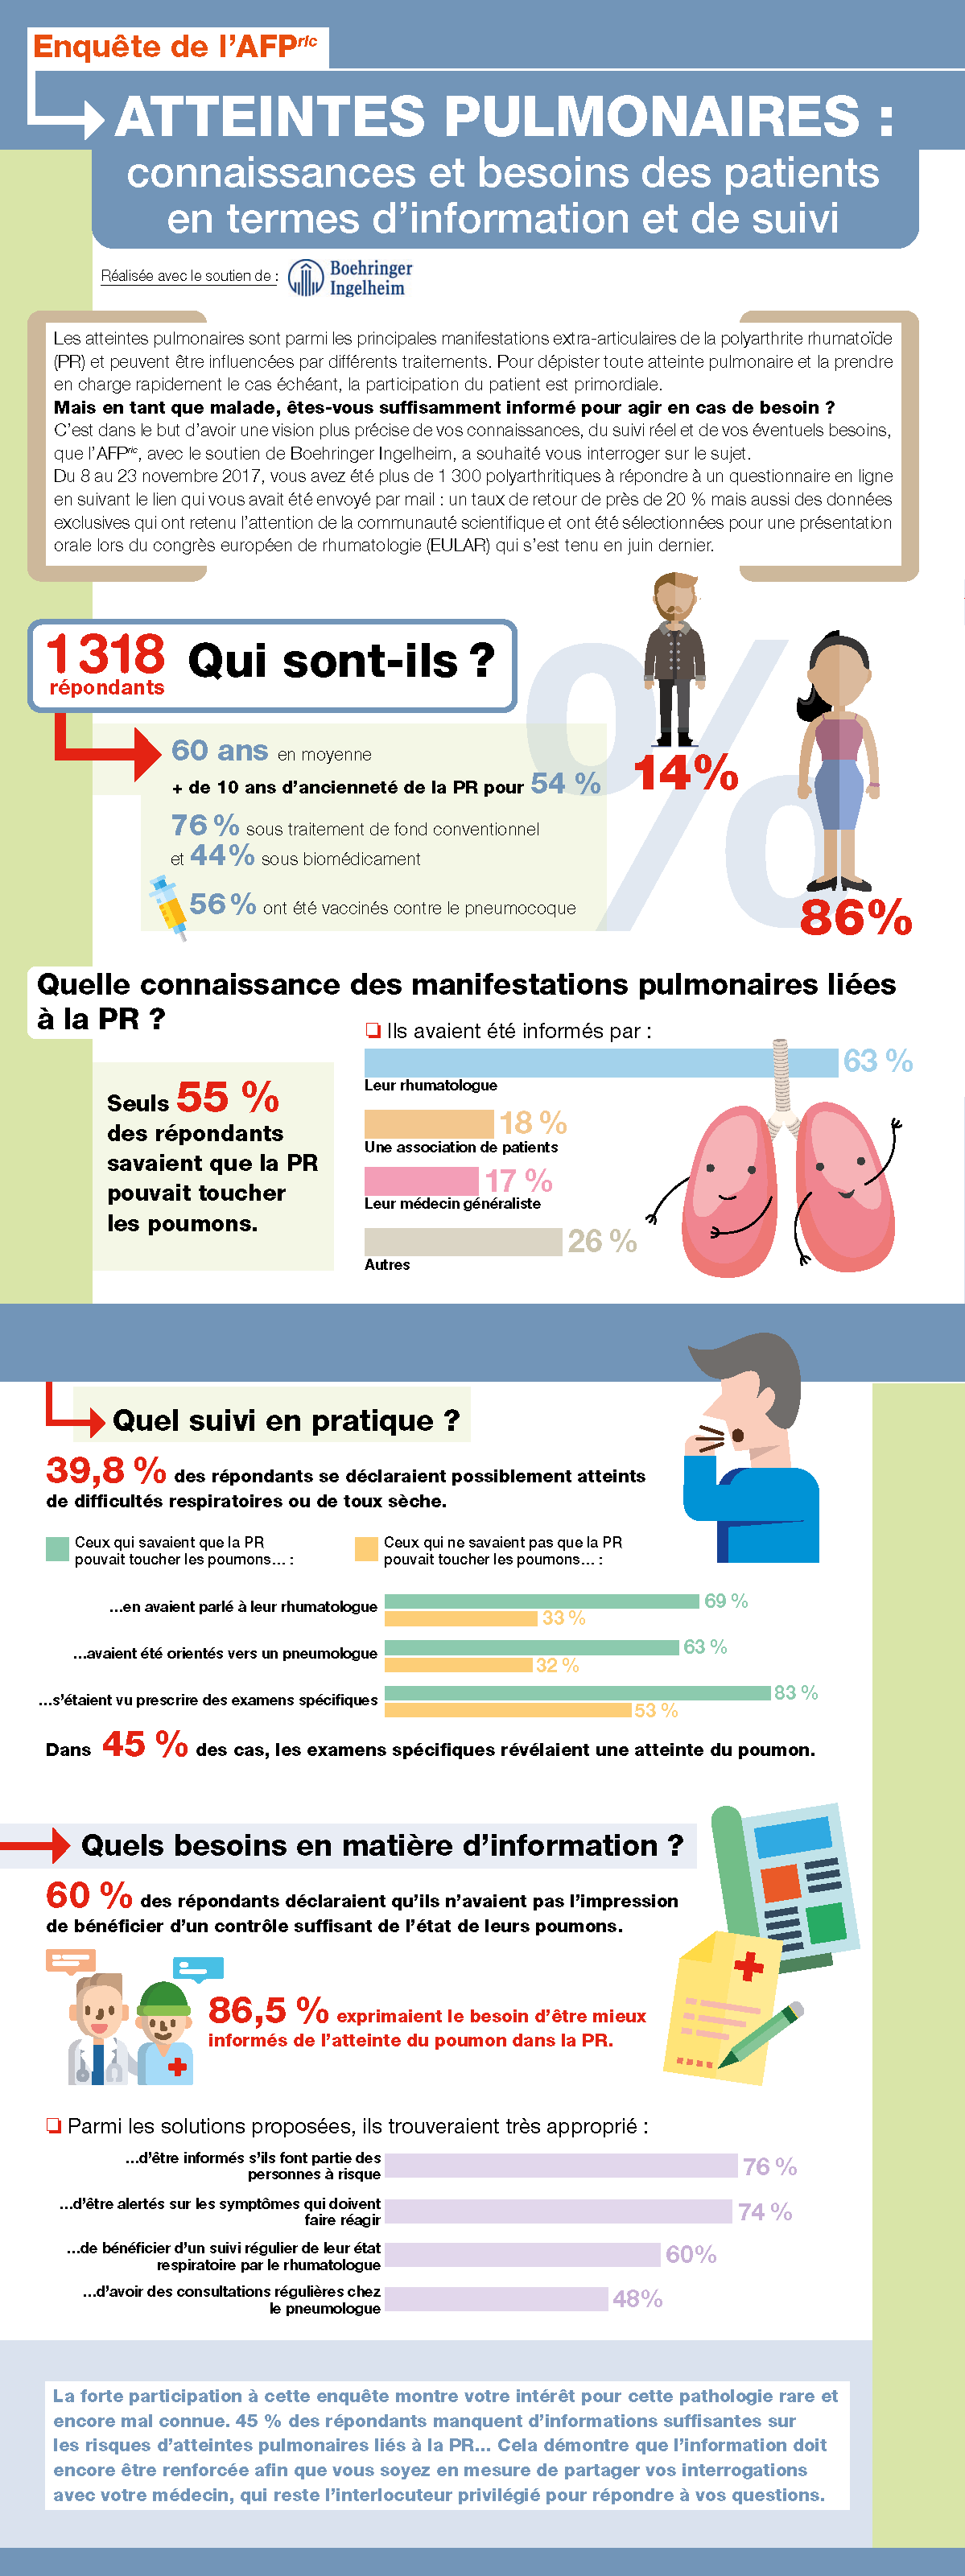 Infographie "Les atteintes pulmonaires"